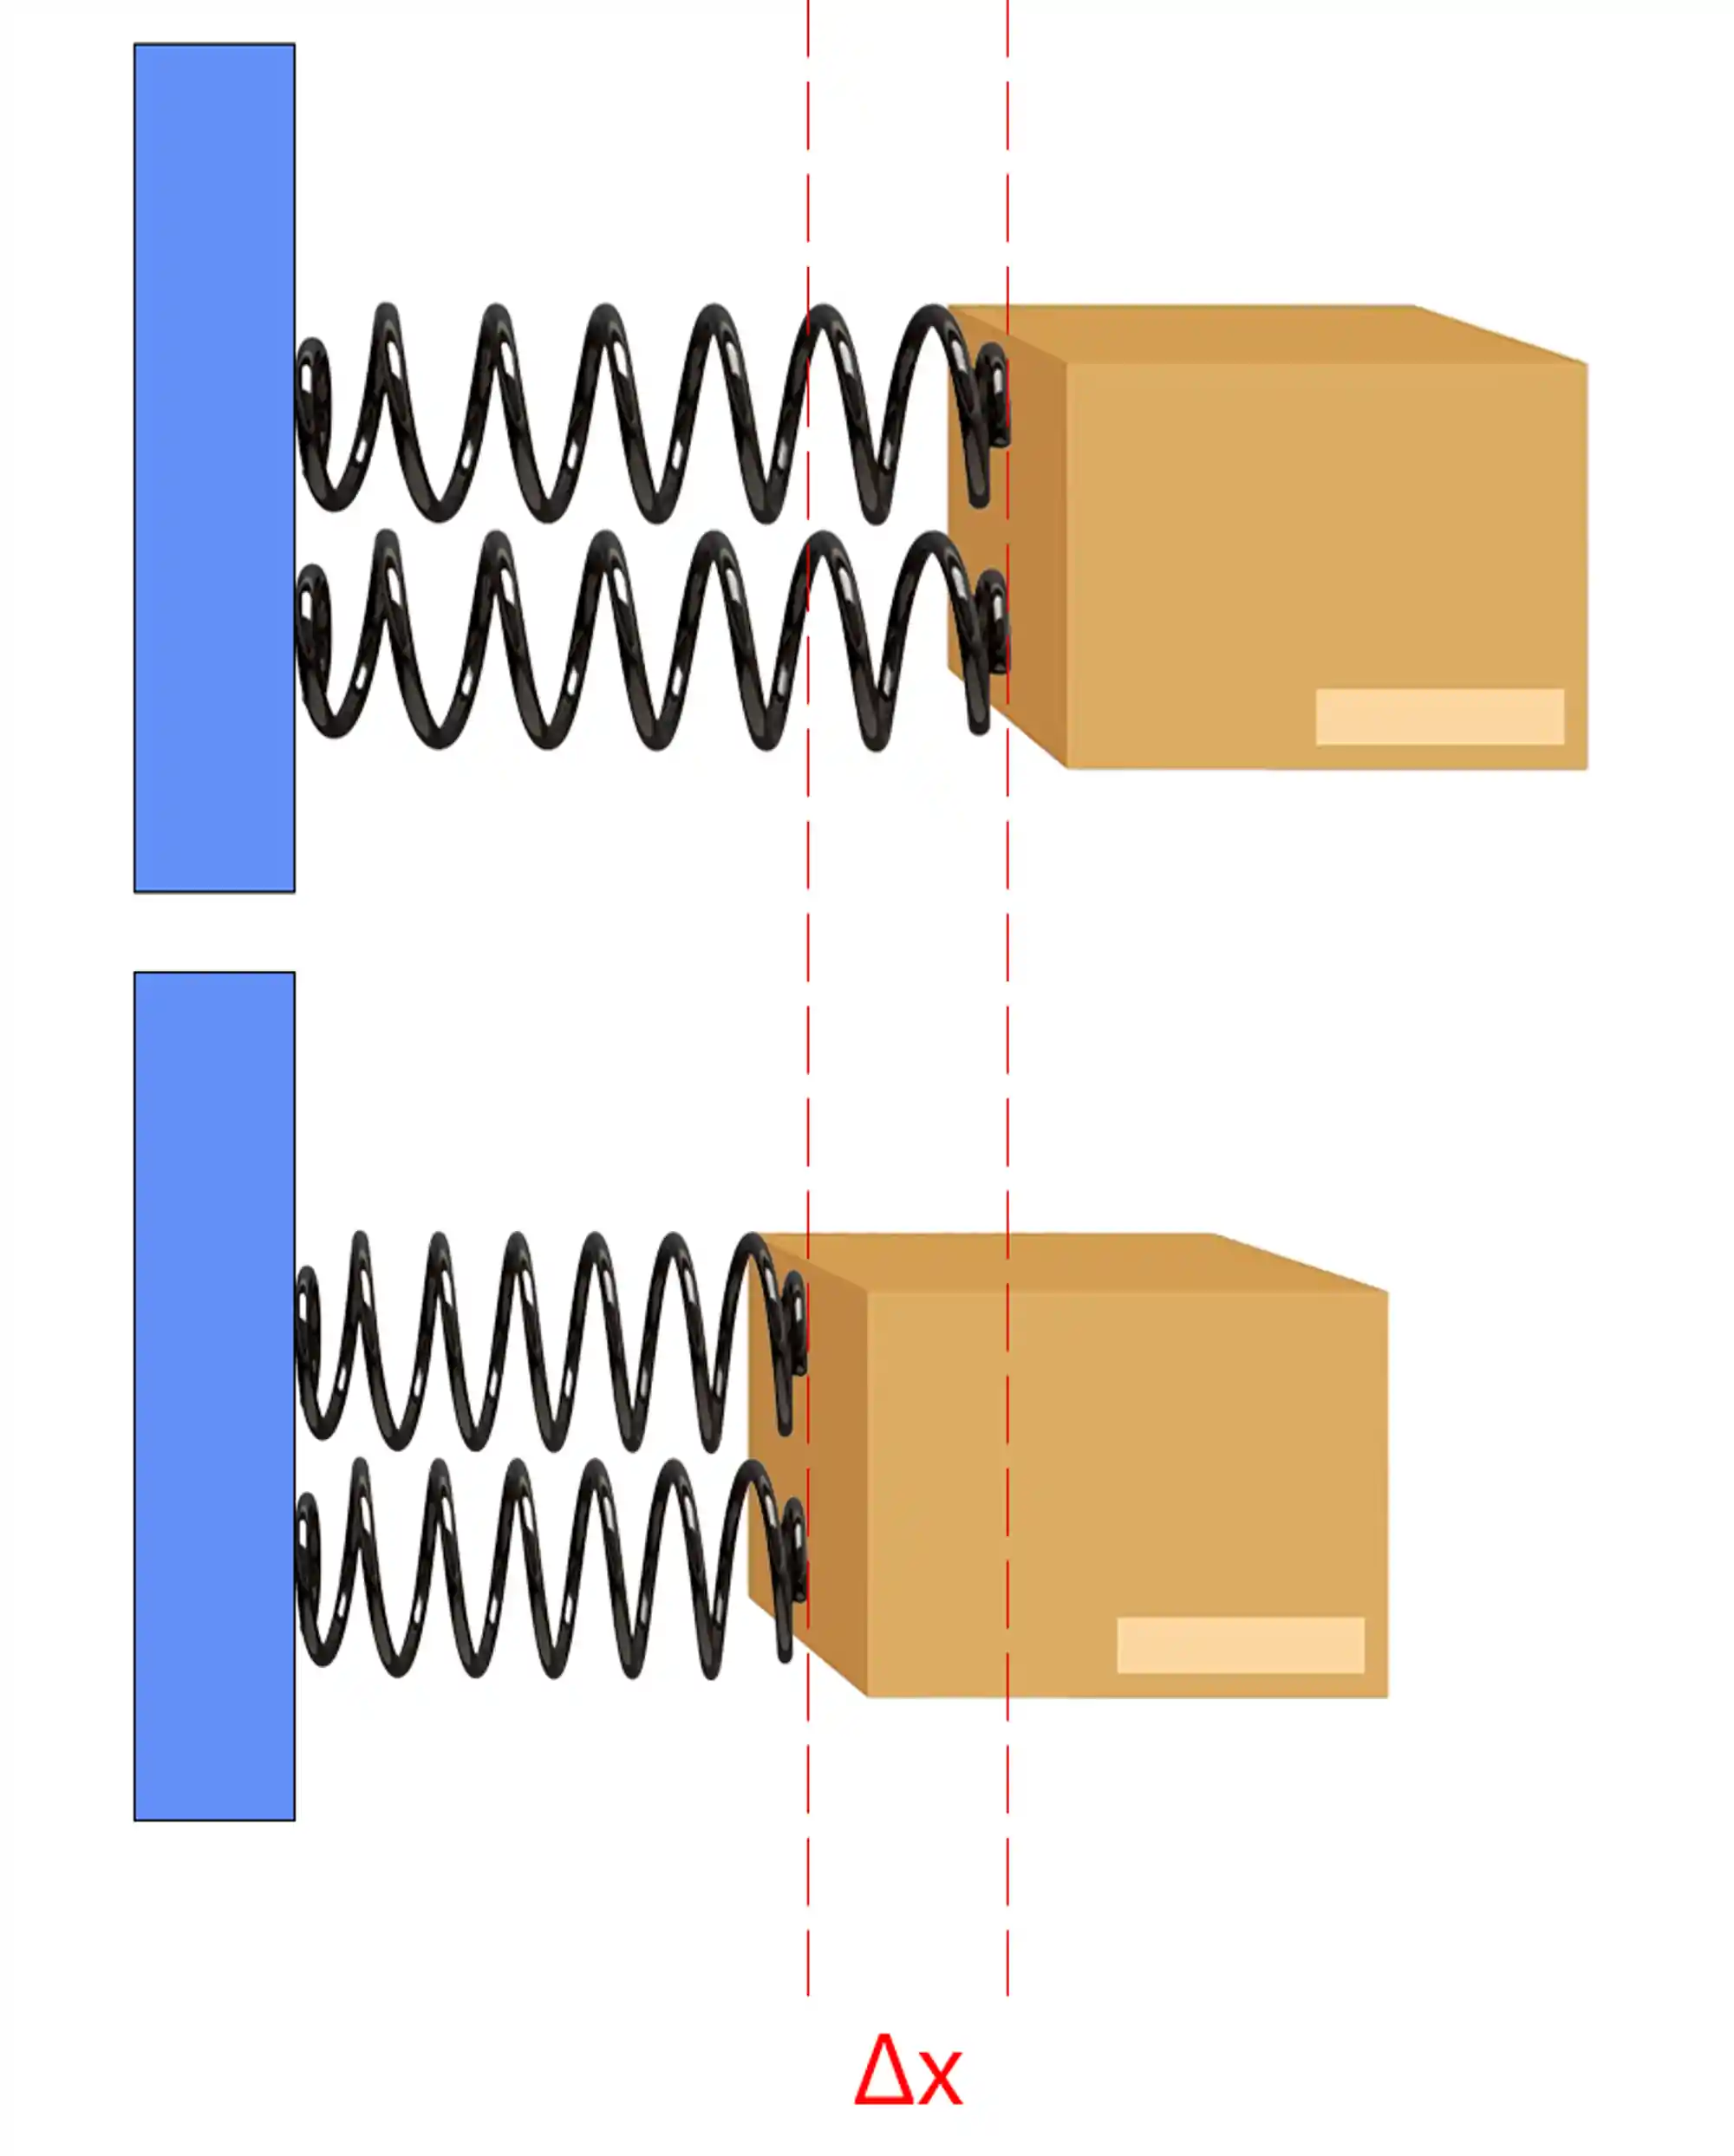 As molas associadas em paralelo sofrem a mesma deformação.